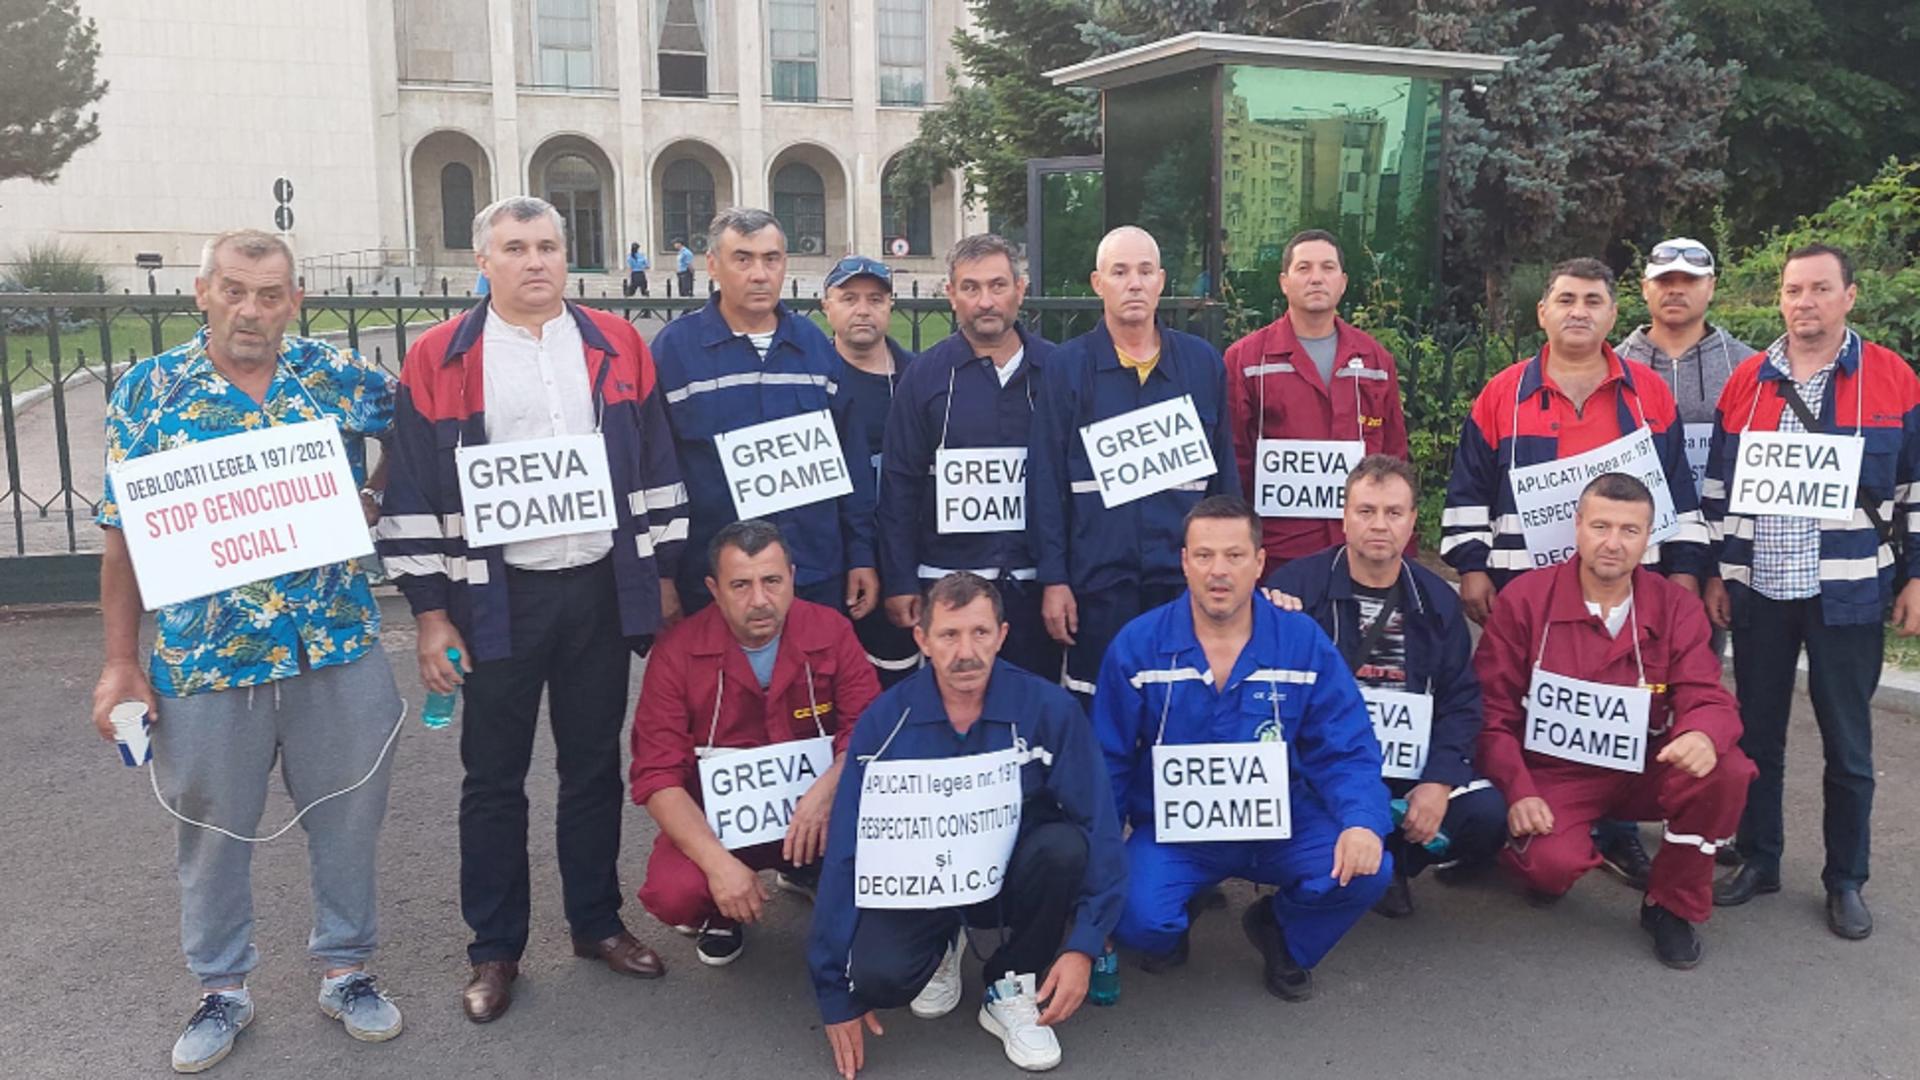 Minerii de la CE Oltenia care făceau greva foamei la Guvern au încetat protestul